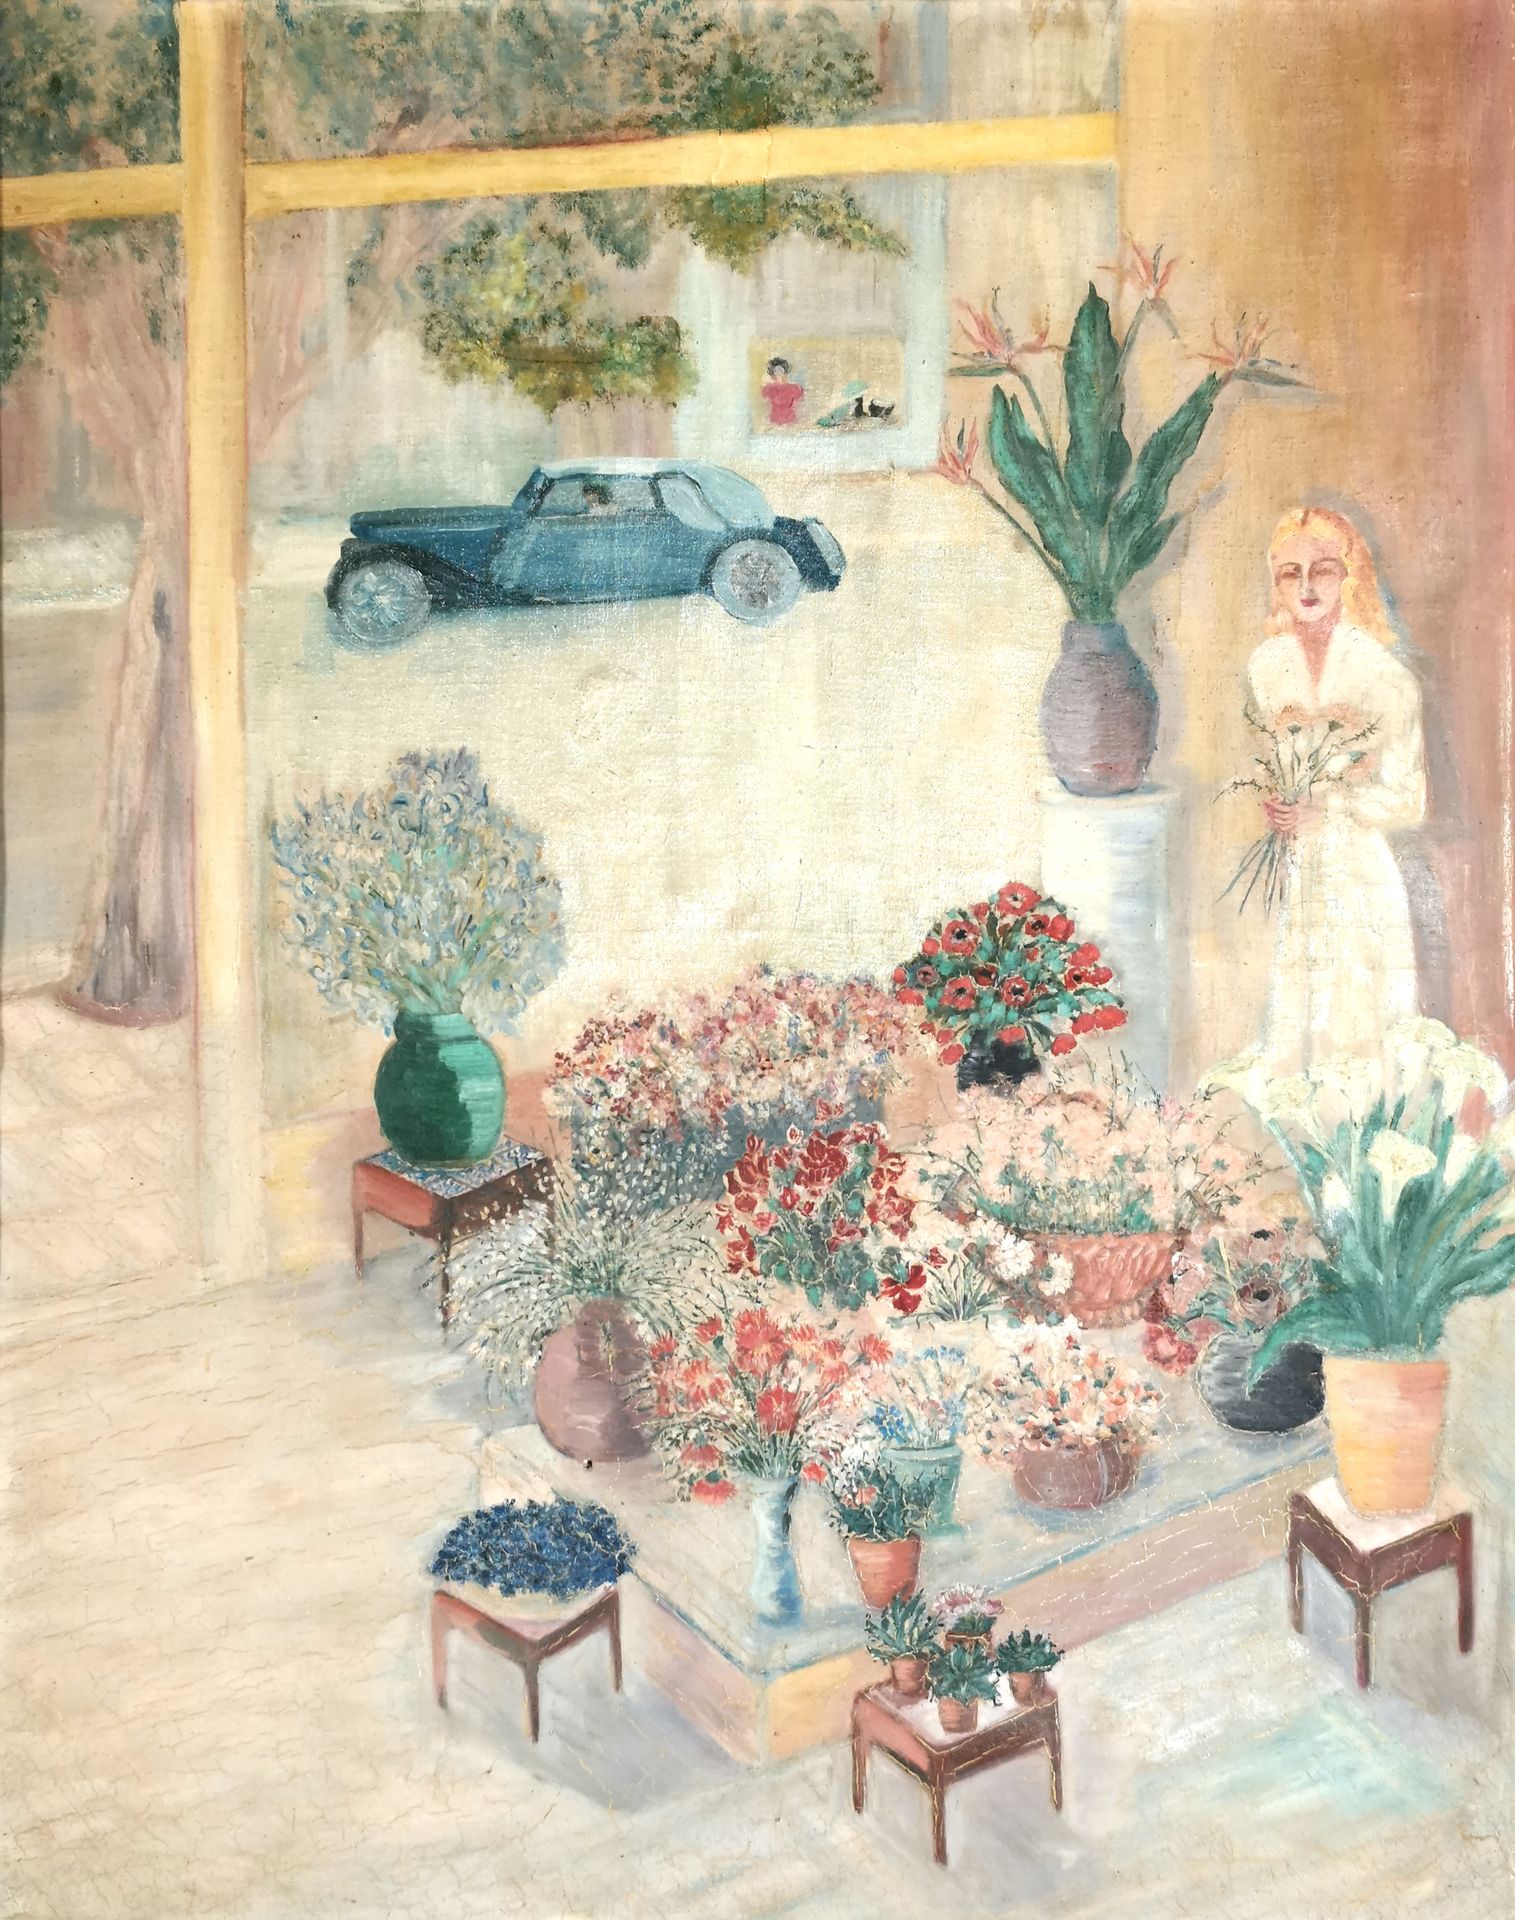 Null Scuola del 20° secolo

Il mercante di fiori

Olio su tela 

88 x 70 cm

Inc&hellip;